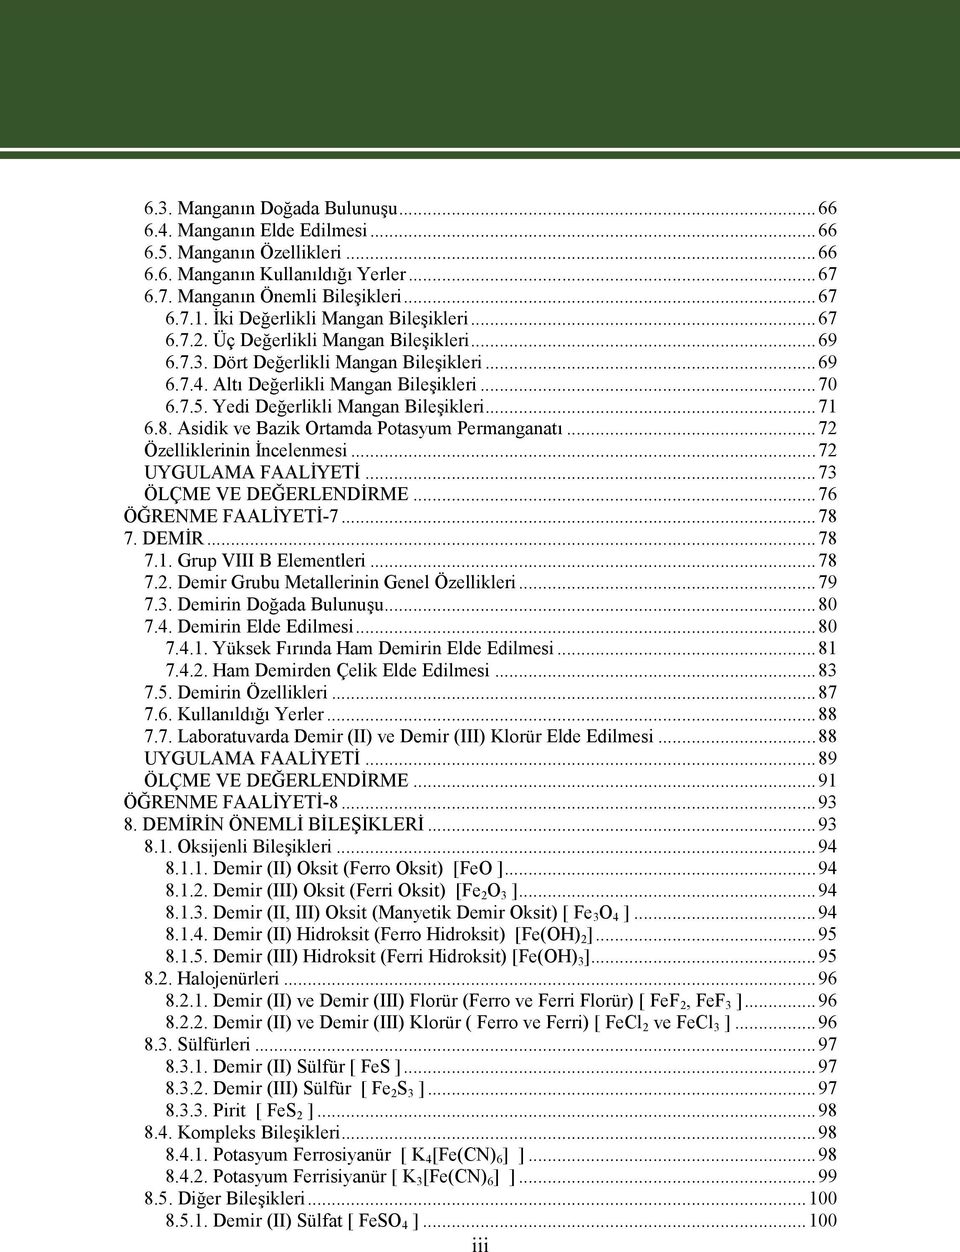 Yedi Değerlikli Mangan Bileşikleri...71 6.8. Asidik ve Bazik Ortamda Potasyum Permanganatı...72 Özelliklerinin İncelenmesi...72 UYGULAMA FAALİYETİ...73 ÖLÇME VE DEĞERLENDİRME...76 ÖĞRENME FAALİYETİ-7.